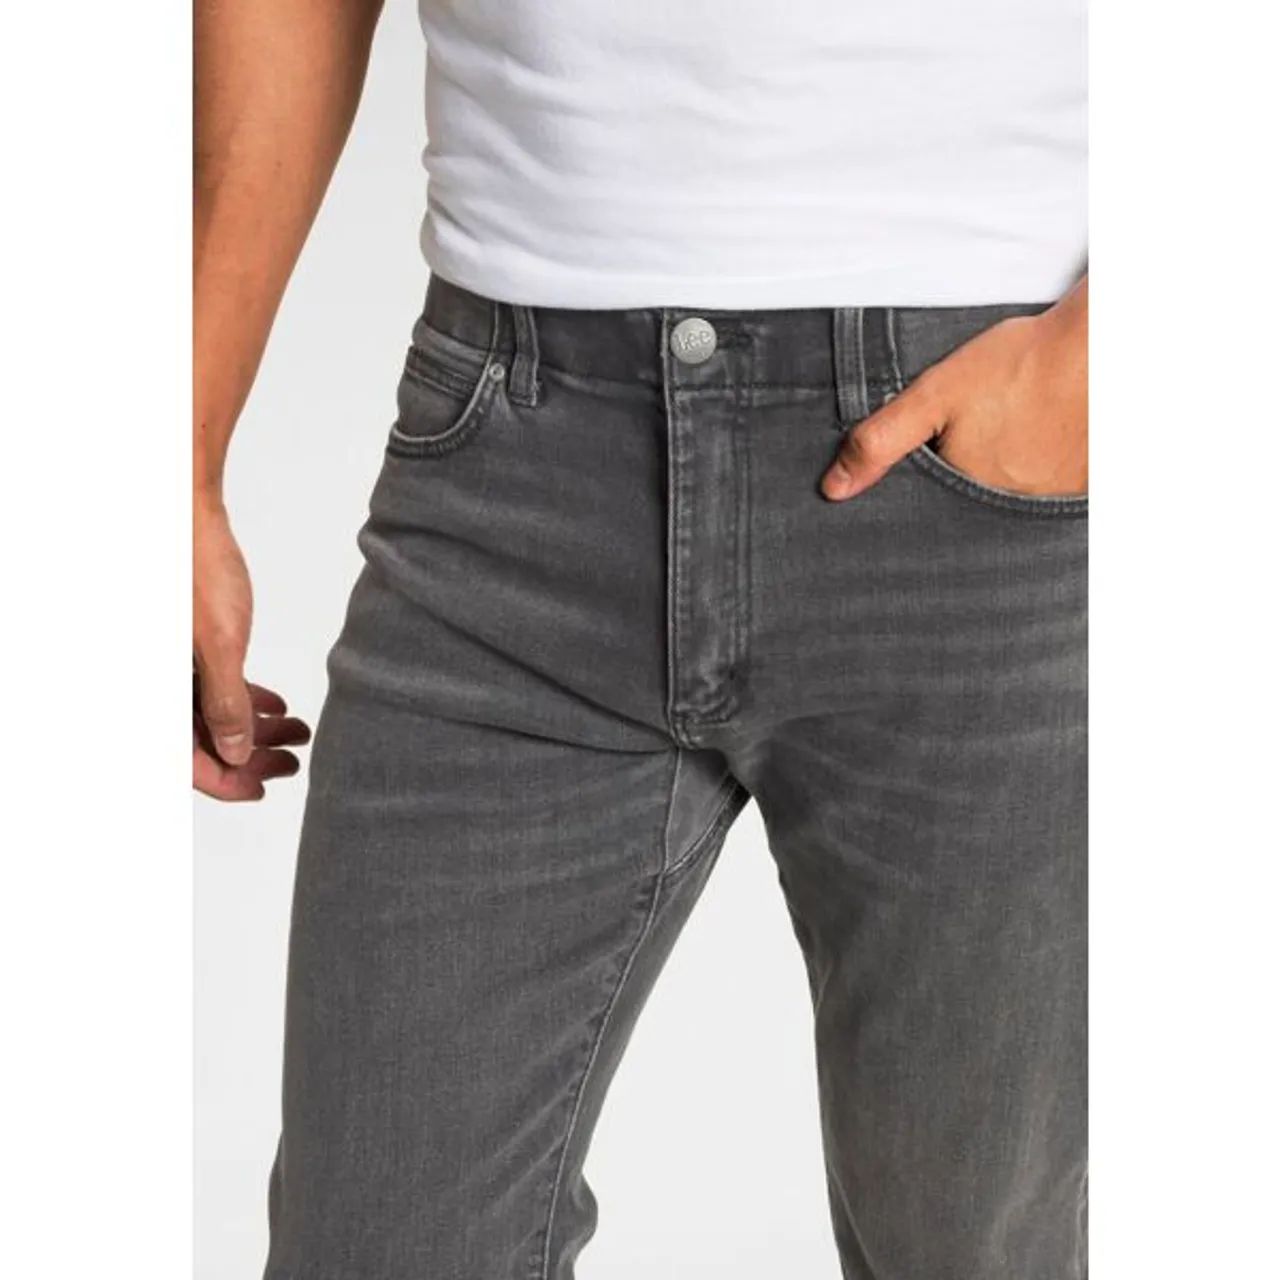 Slim-fit-Jeans LEE "Extrem Motion Slim" Gr. 40, Länge 32, grau (forge) Herren Jeans Slim Fit